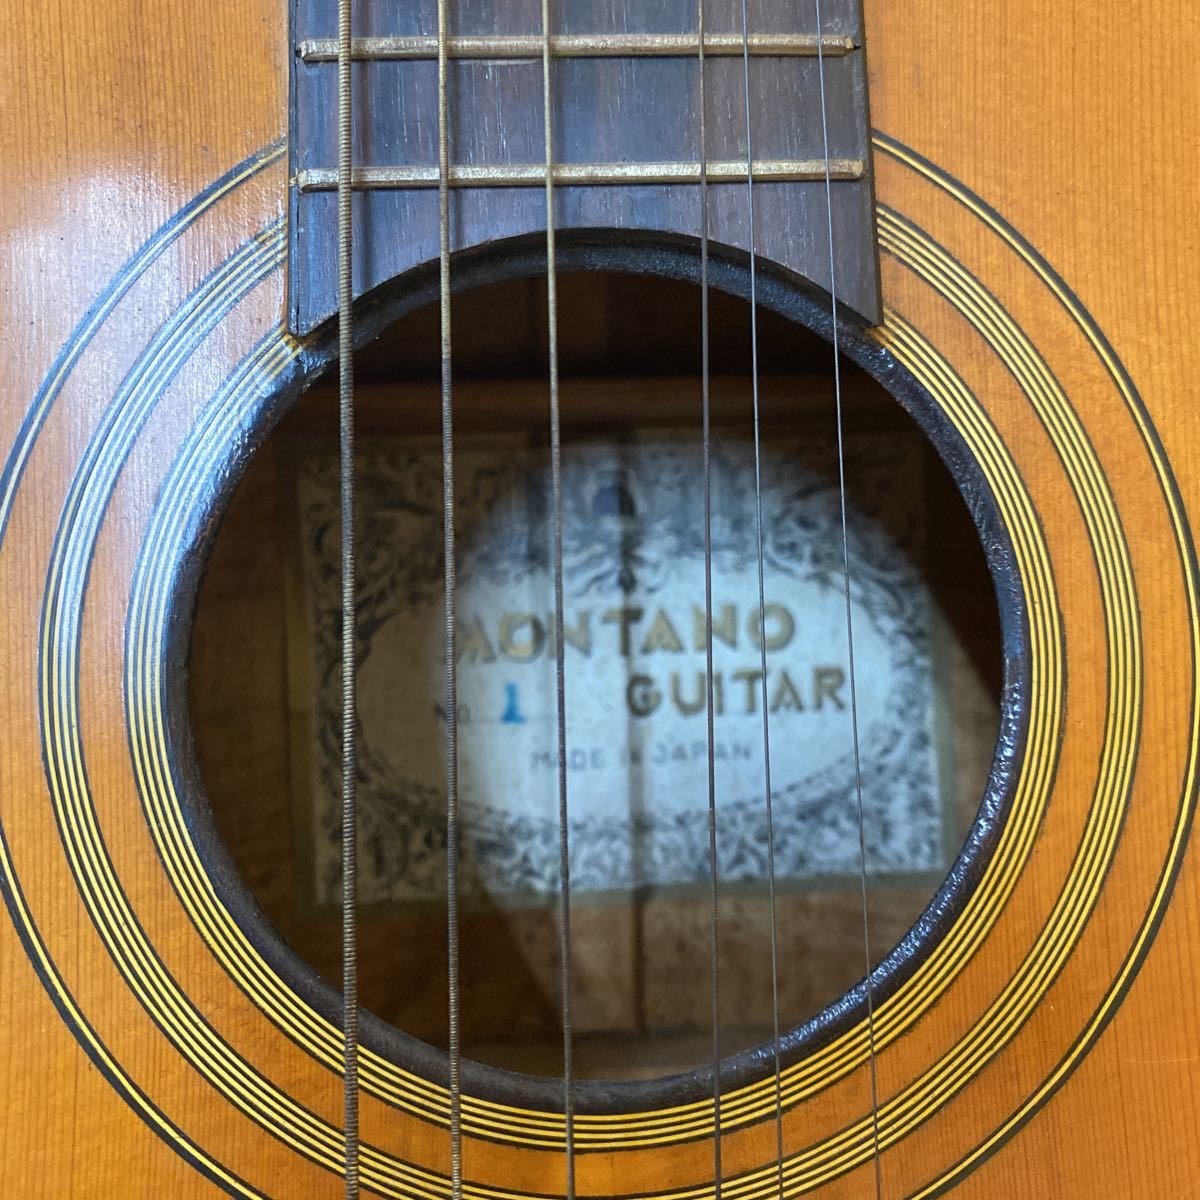 MONTANO GUITAR NO.1 クラシックギター モンタノ 日本製 古い ジャンク アコースティックギター 弦楽器 現状品